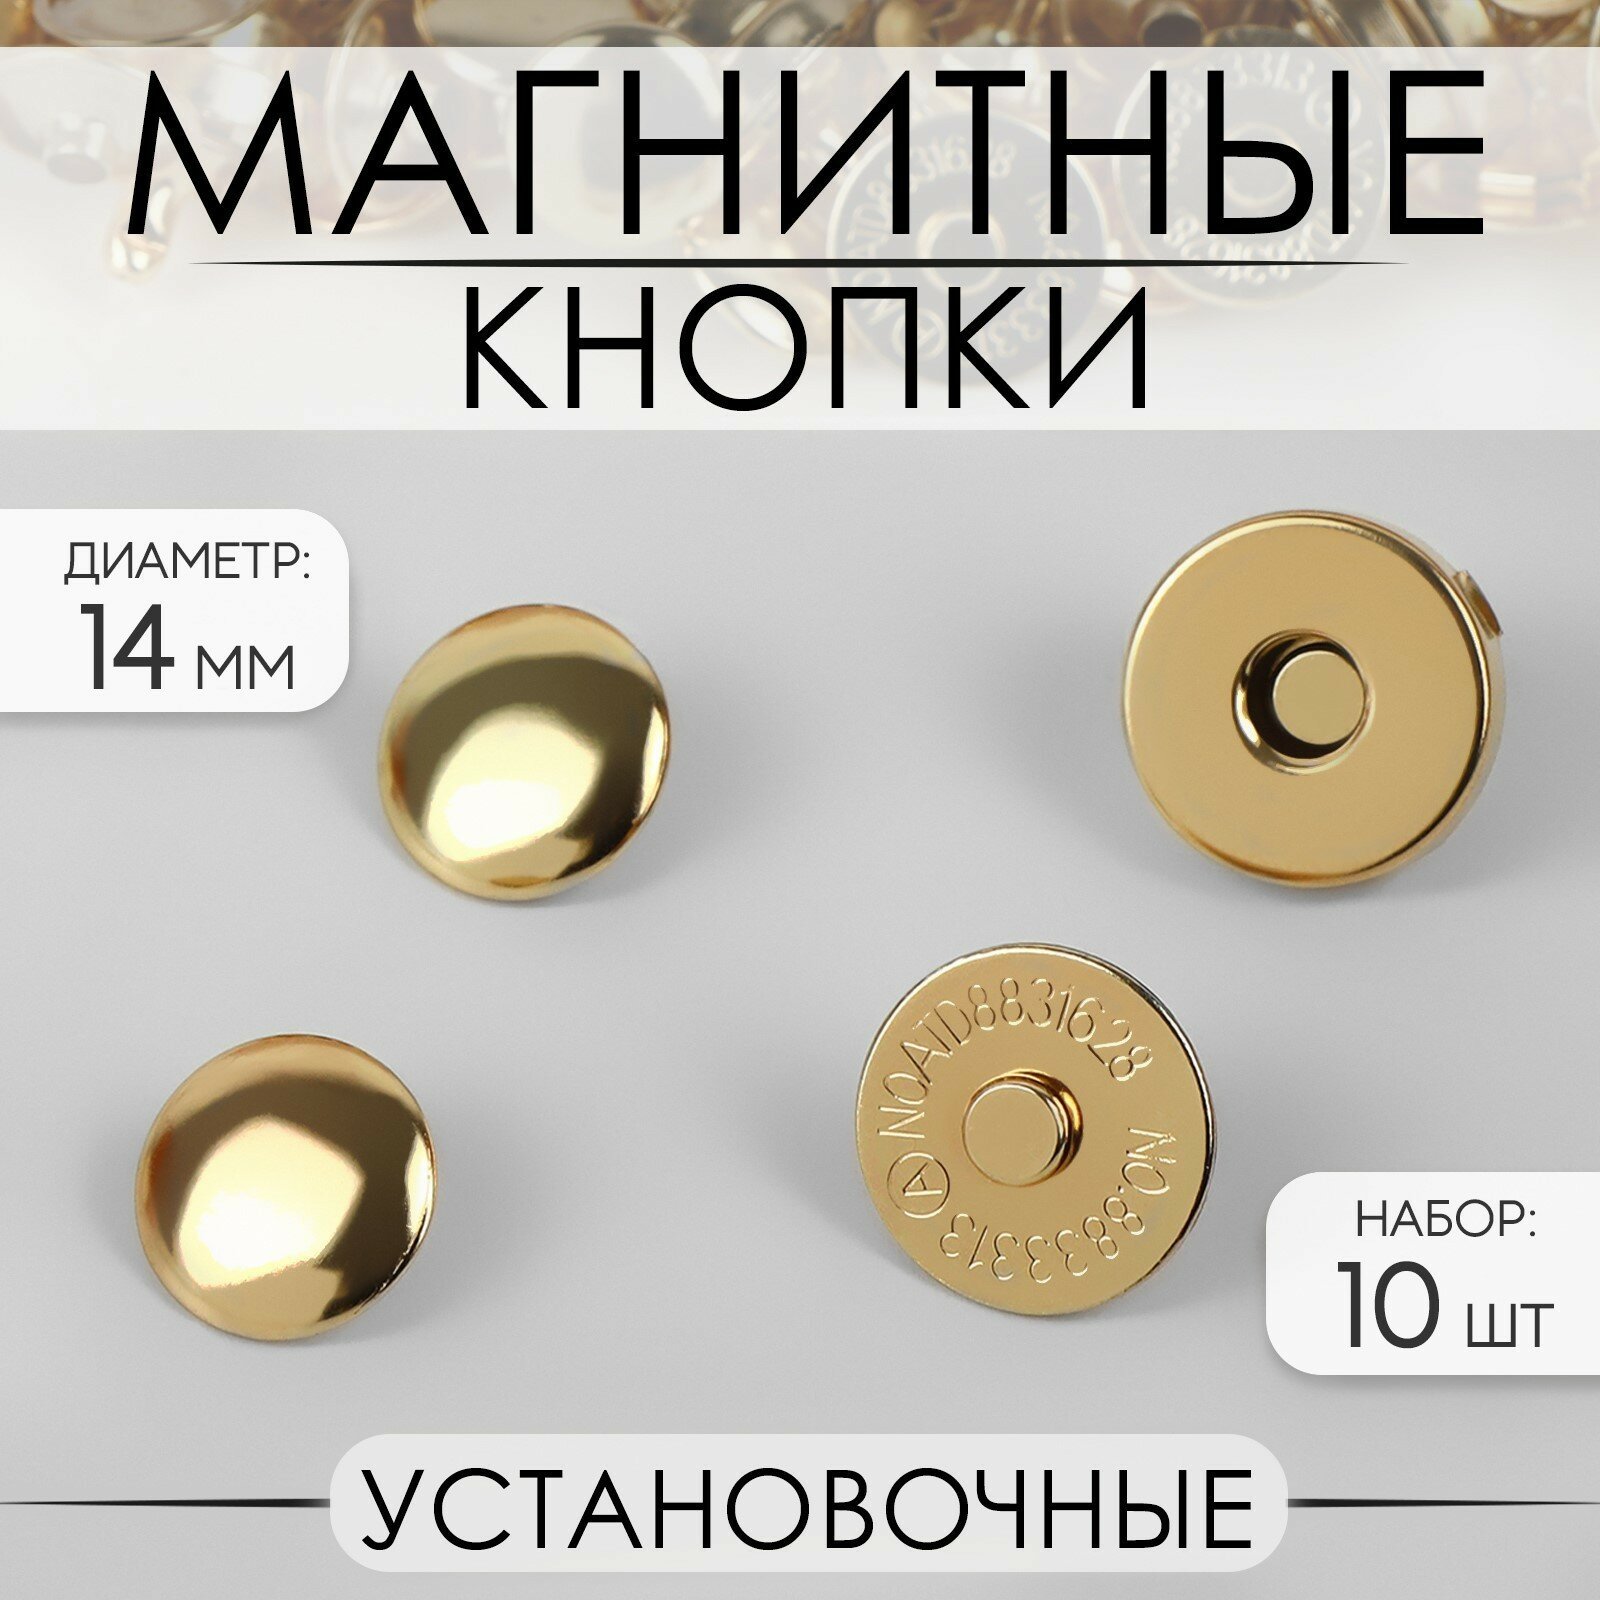 Кнопки установочные, магнитные, d = 14 мм, 10 шт, цвет золотой (2шт.)